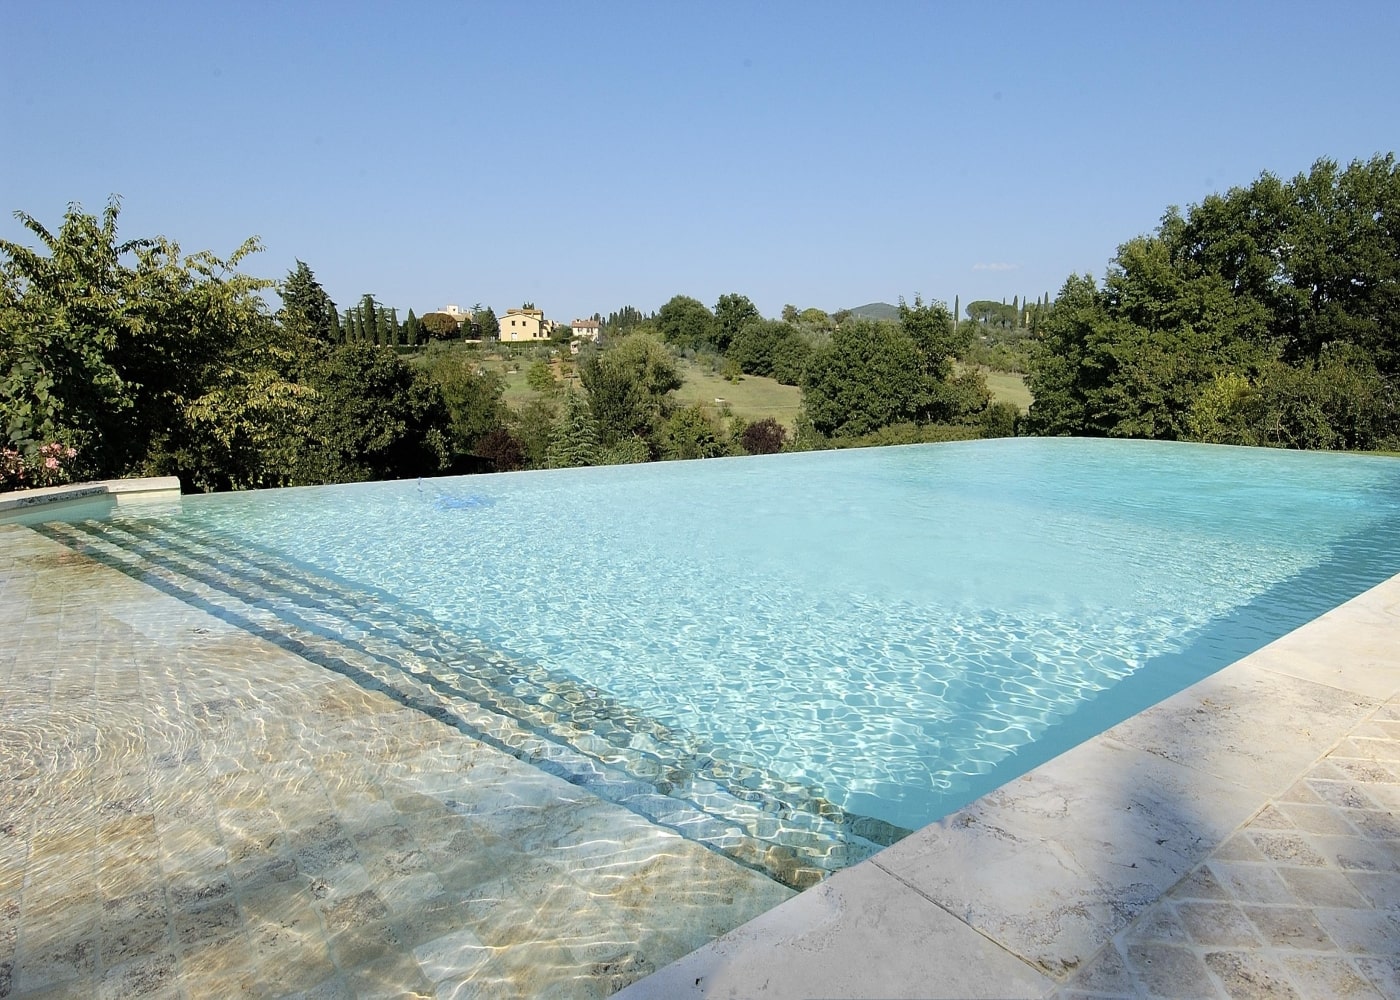 Realizzazione piscina di design in Toscana by Gardenpool